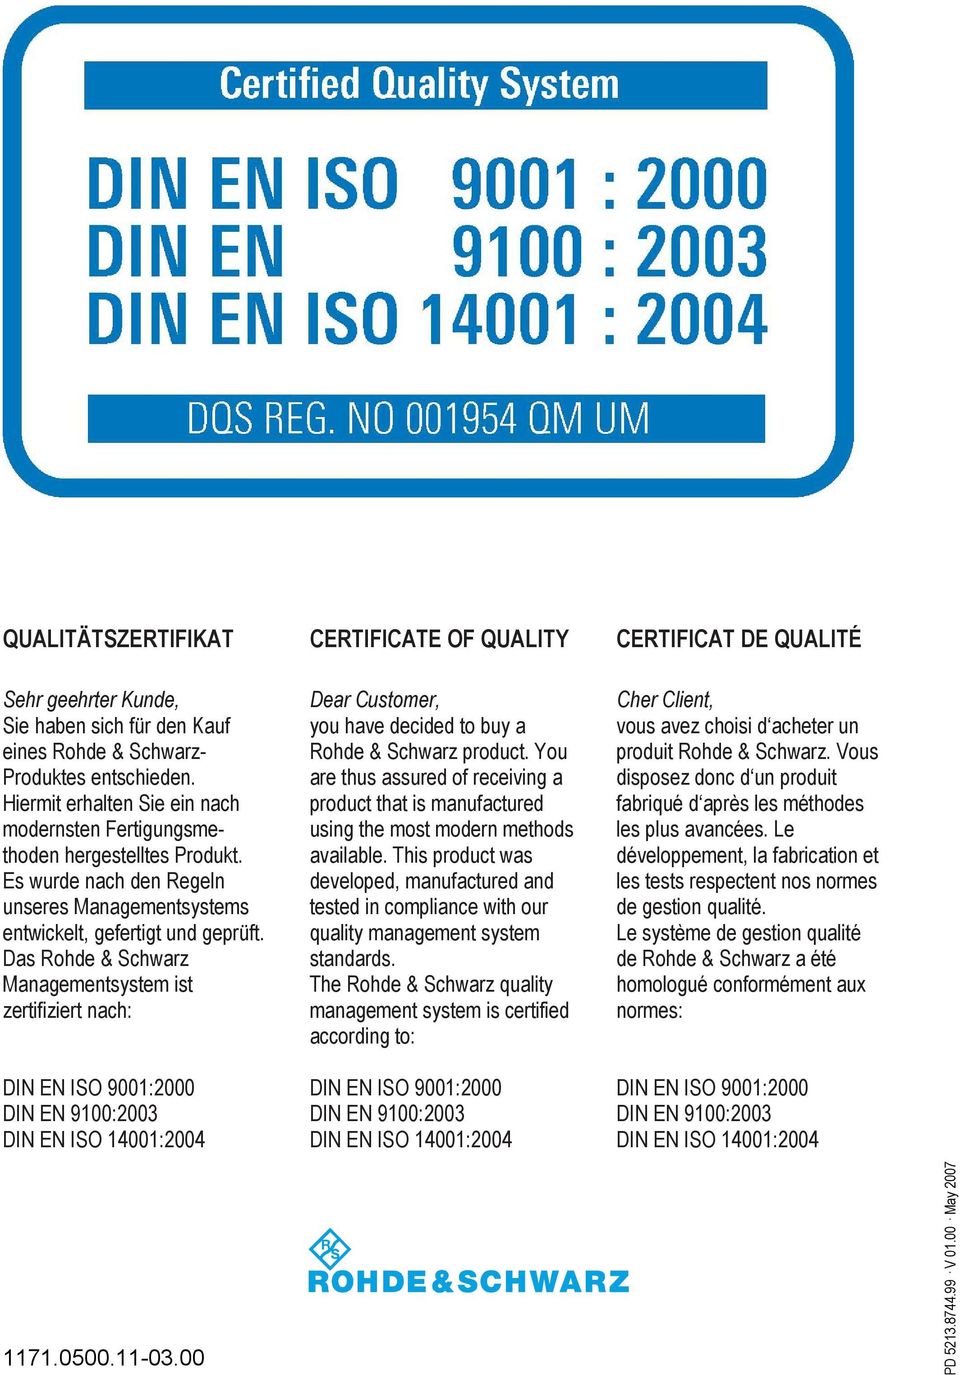 Das Rohde & Schwarz Managementsystem ist zertifiziert nach: DIN EN ISO 9001:2000 DIN EN 9100:2003 DIN EN ISO 14001:2004 CERTIFICATE OF QUALITY Dear Customer, you have decided to buy a Rohde & Schwarz